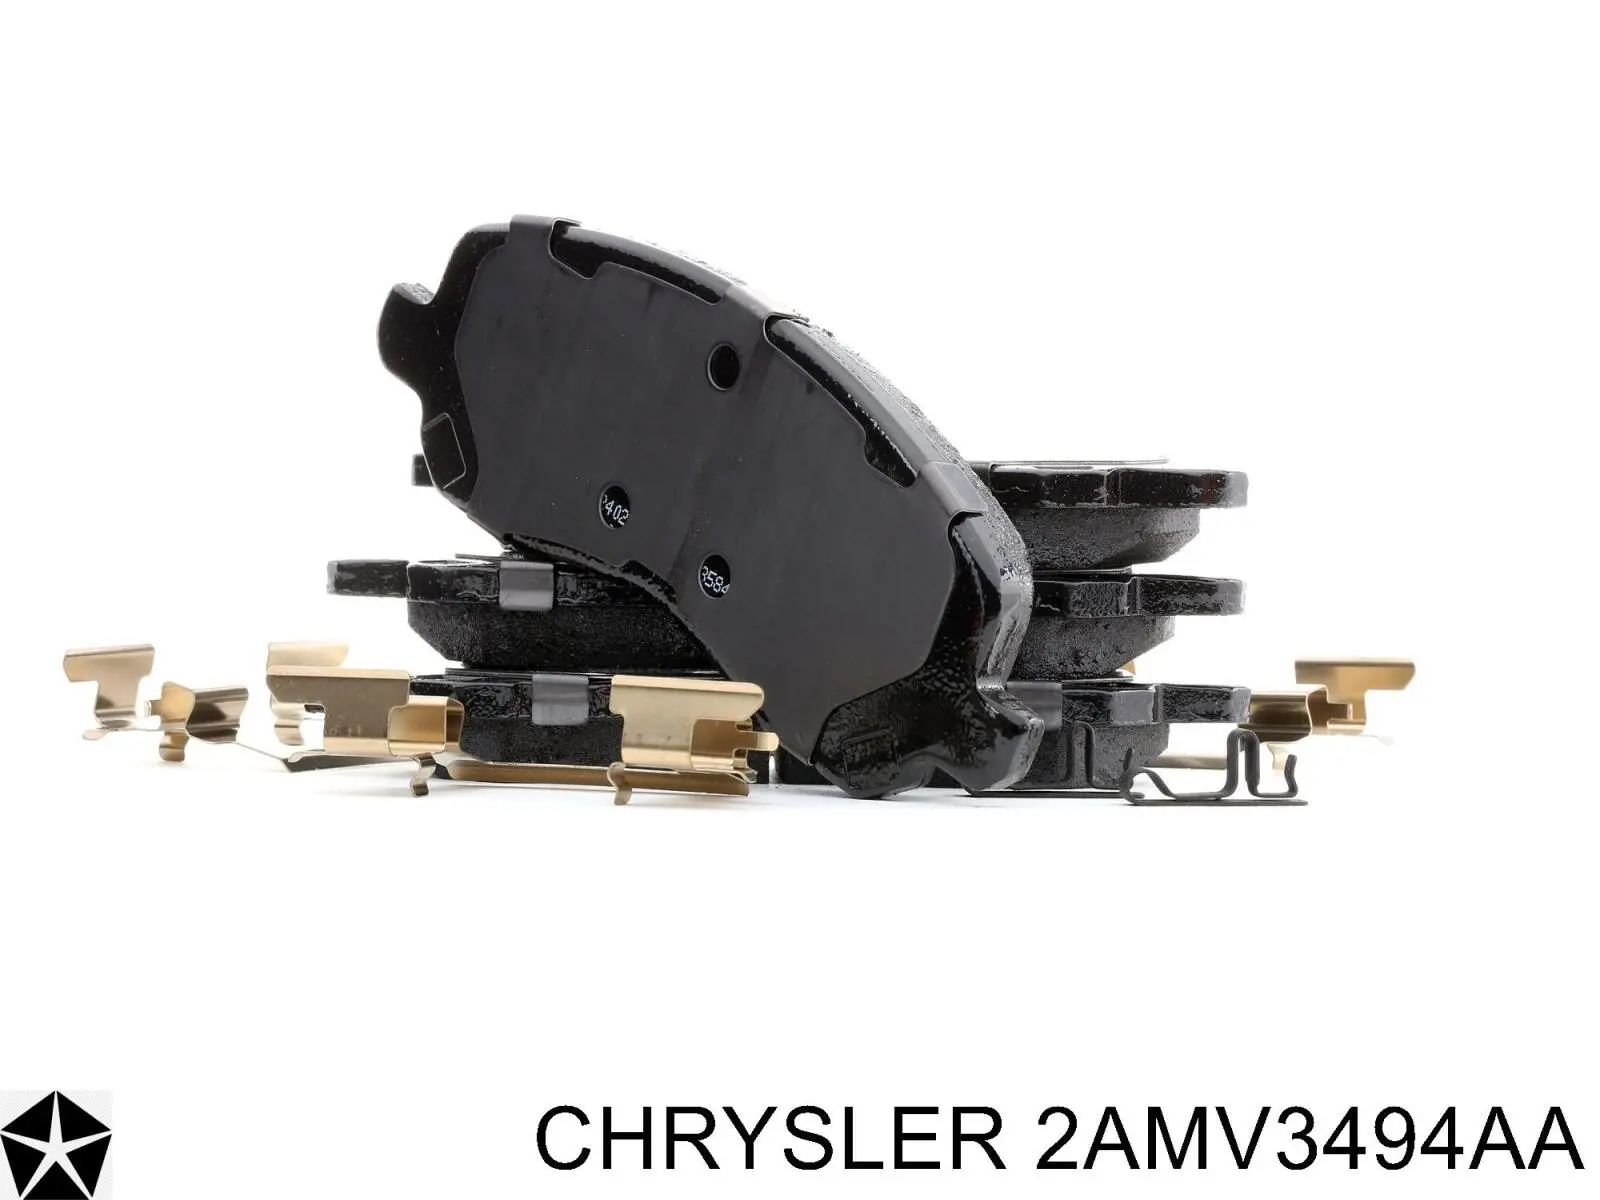 2AMV3494AA Chrysler pastillas de freno delanteras